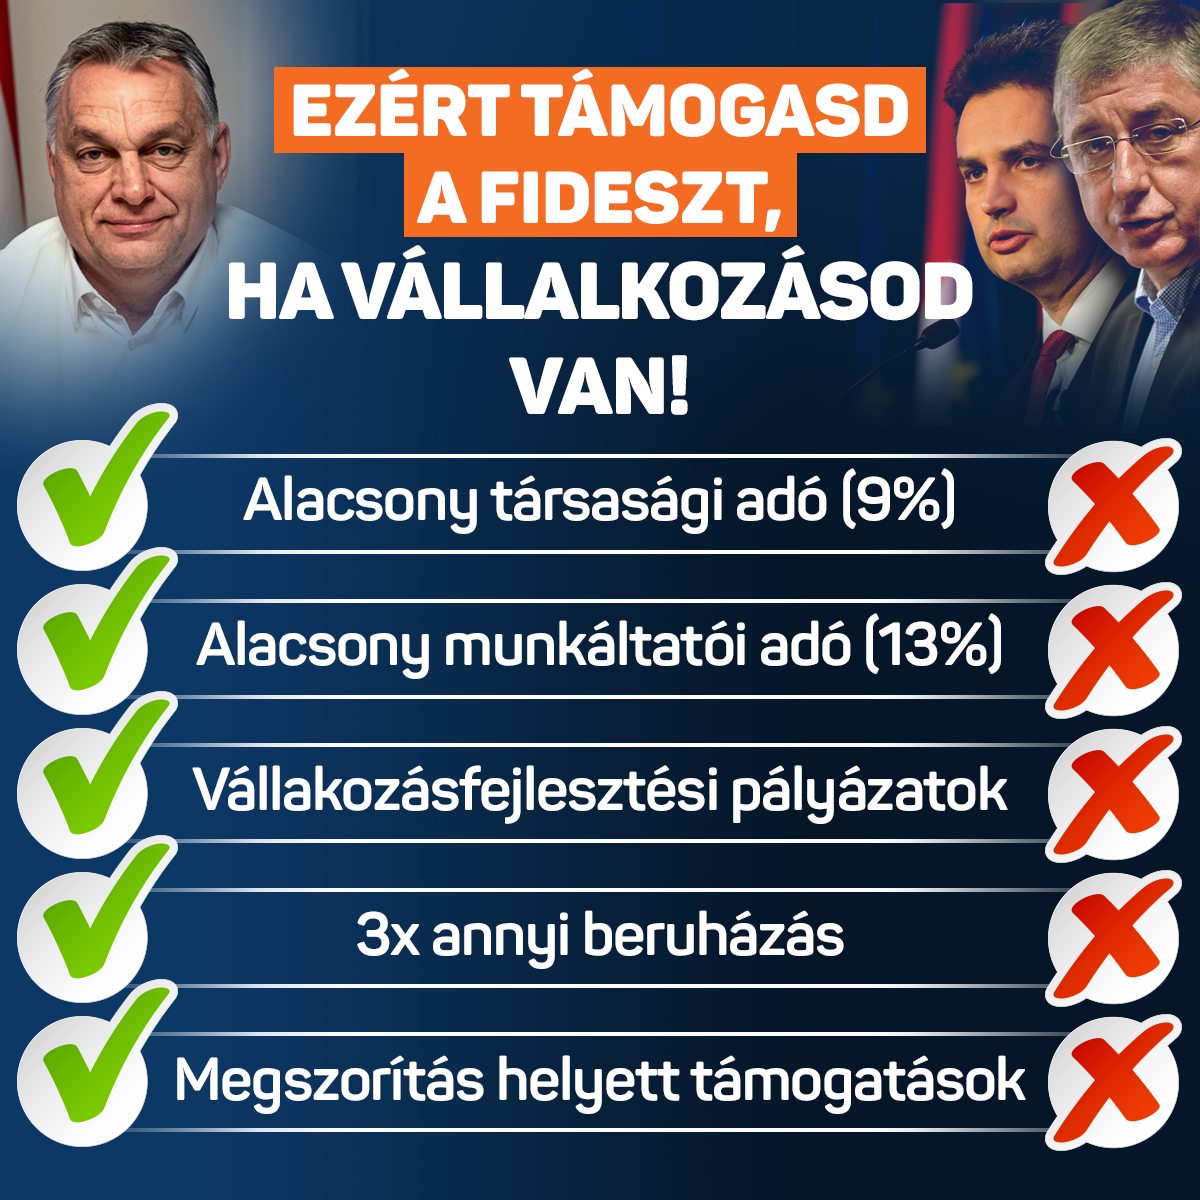 Ezért támogasd a Fideszt, ha vállalkozásod van. Most vasárnap: szavazz! Csak a Fidesz!